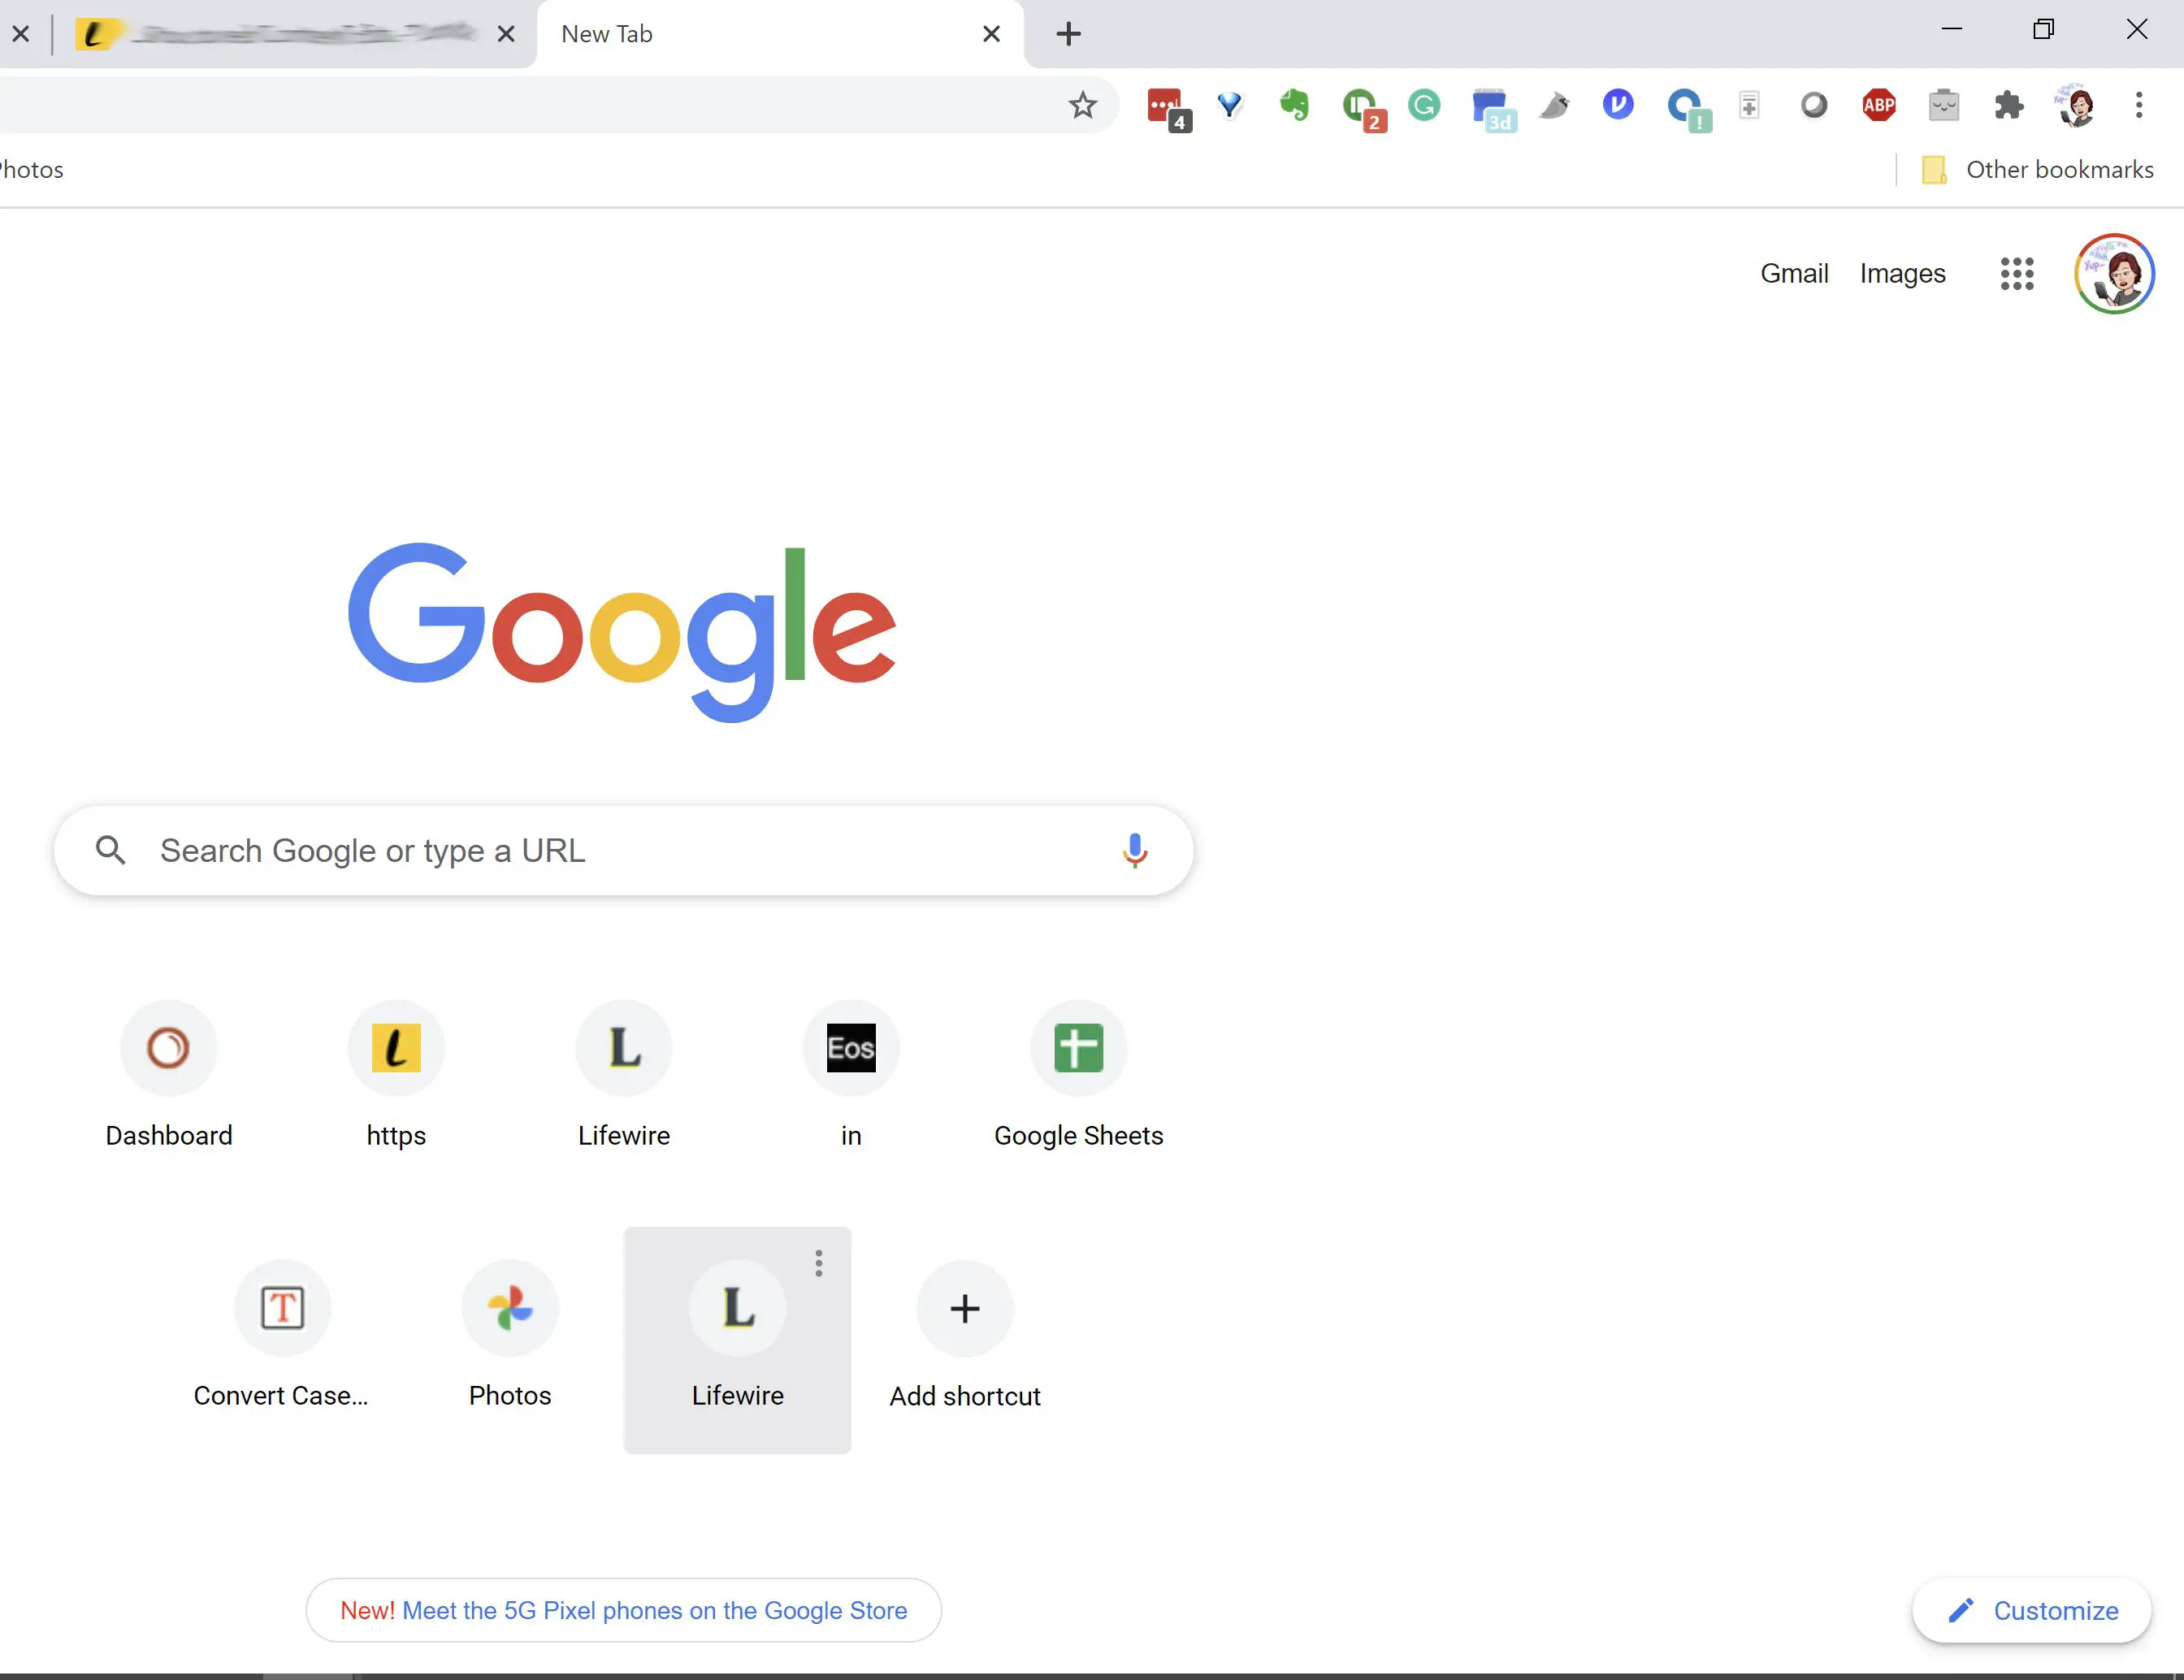 adicionar atalhos personalizados no Google Chrome.